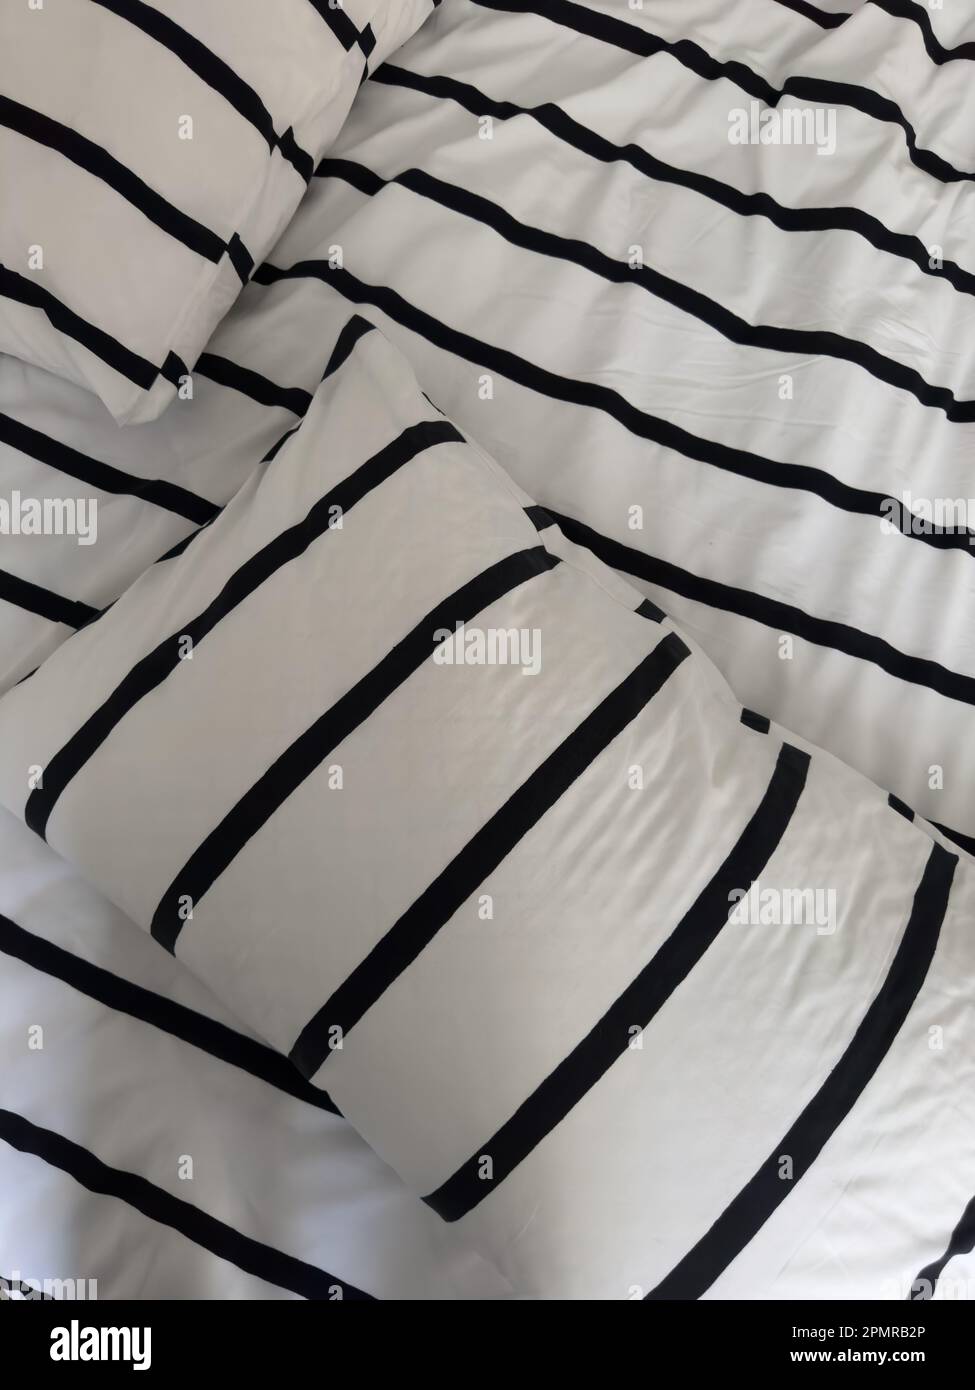 couvre-lits avec couette en duvet à rayures noires et blanches Banque D'Images